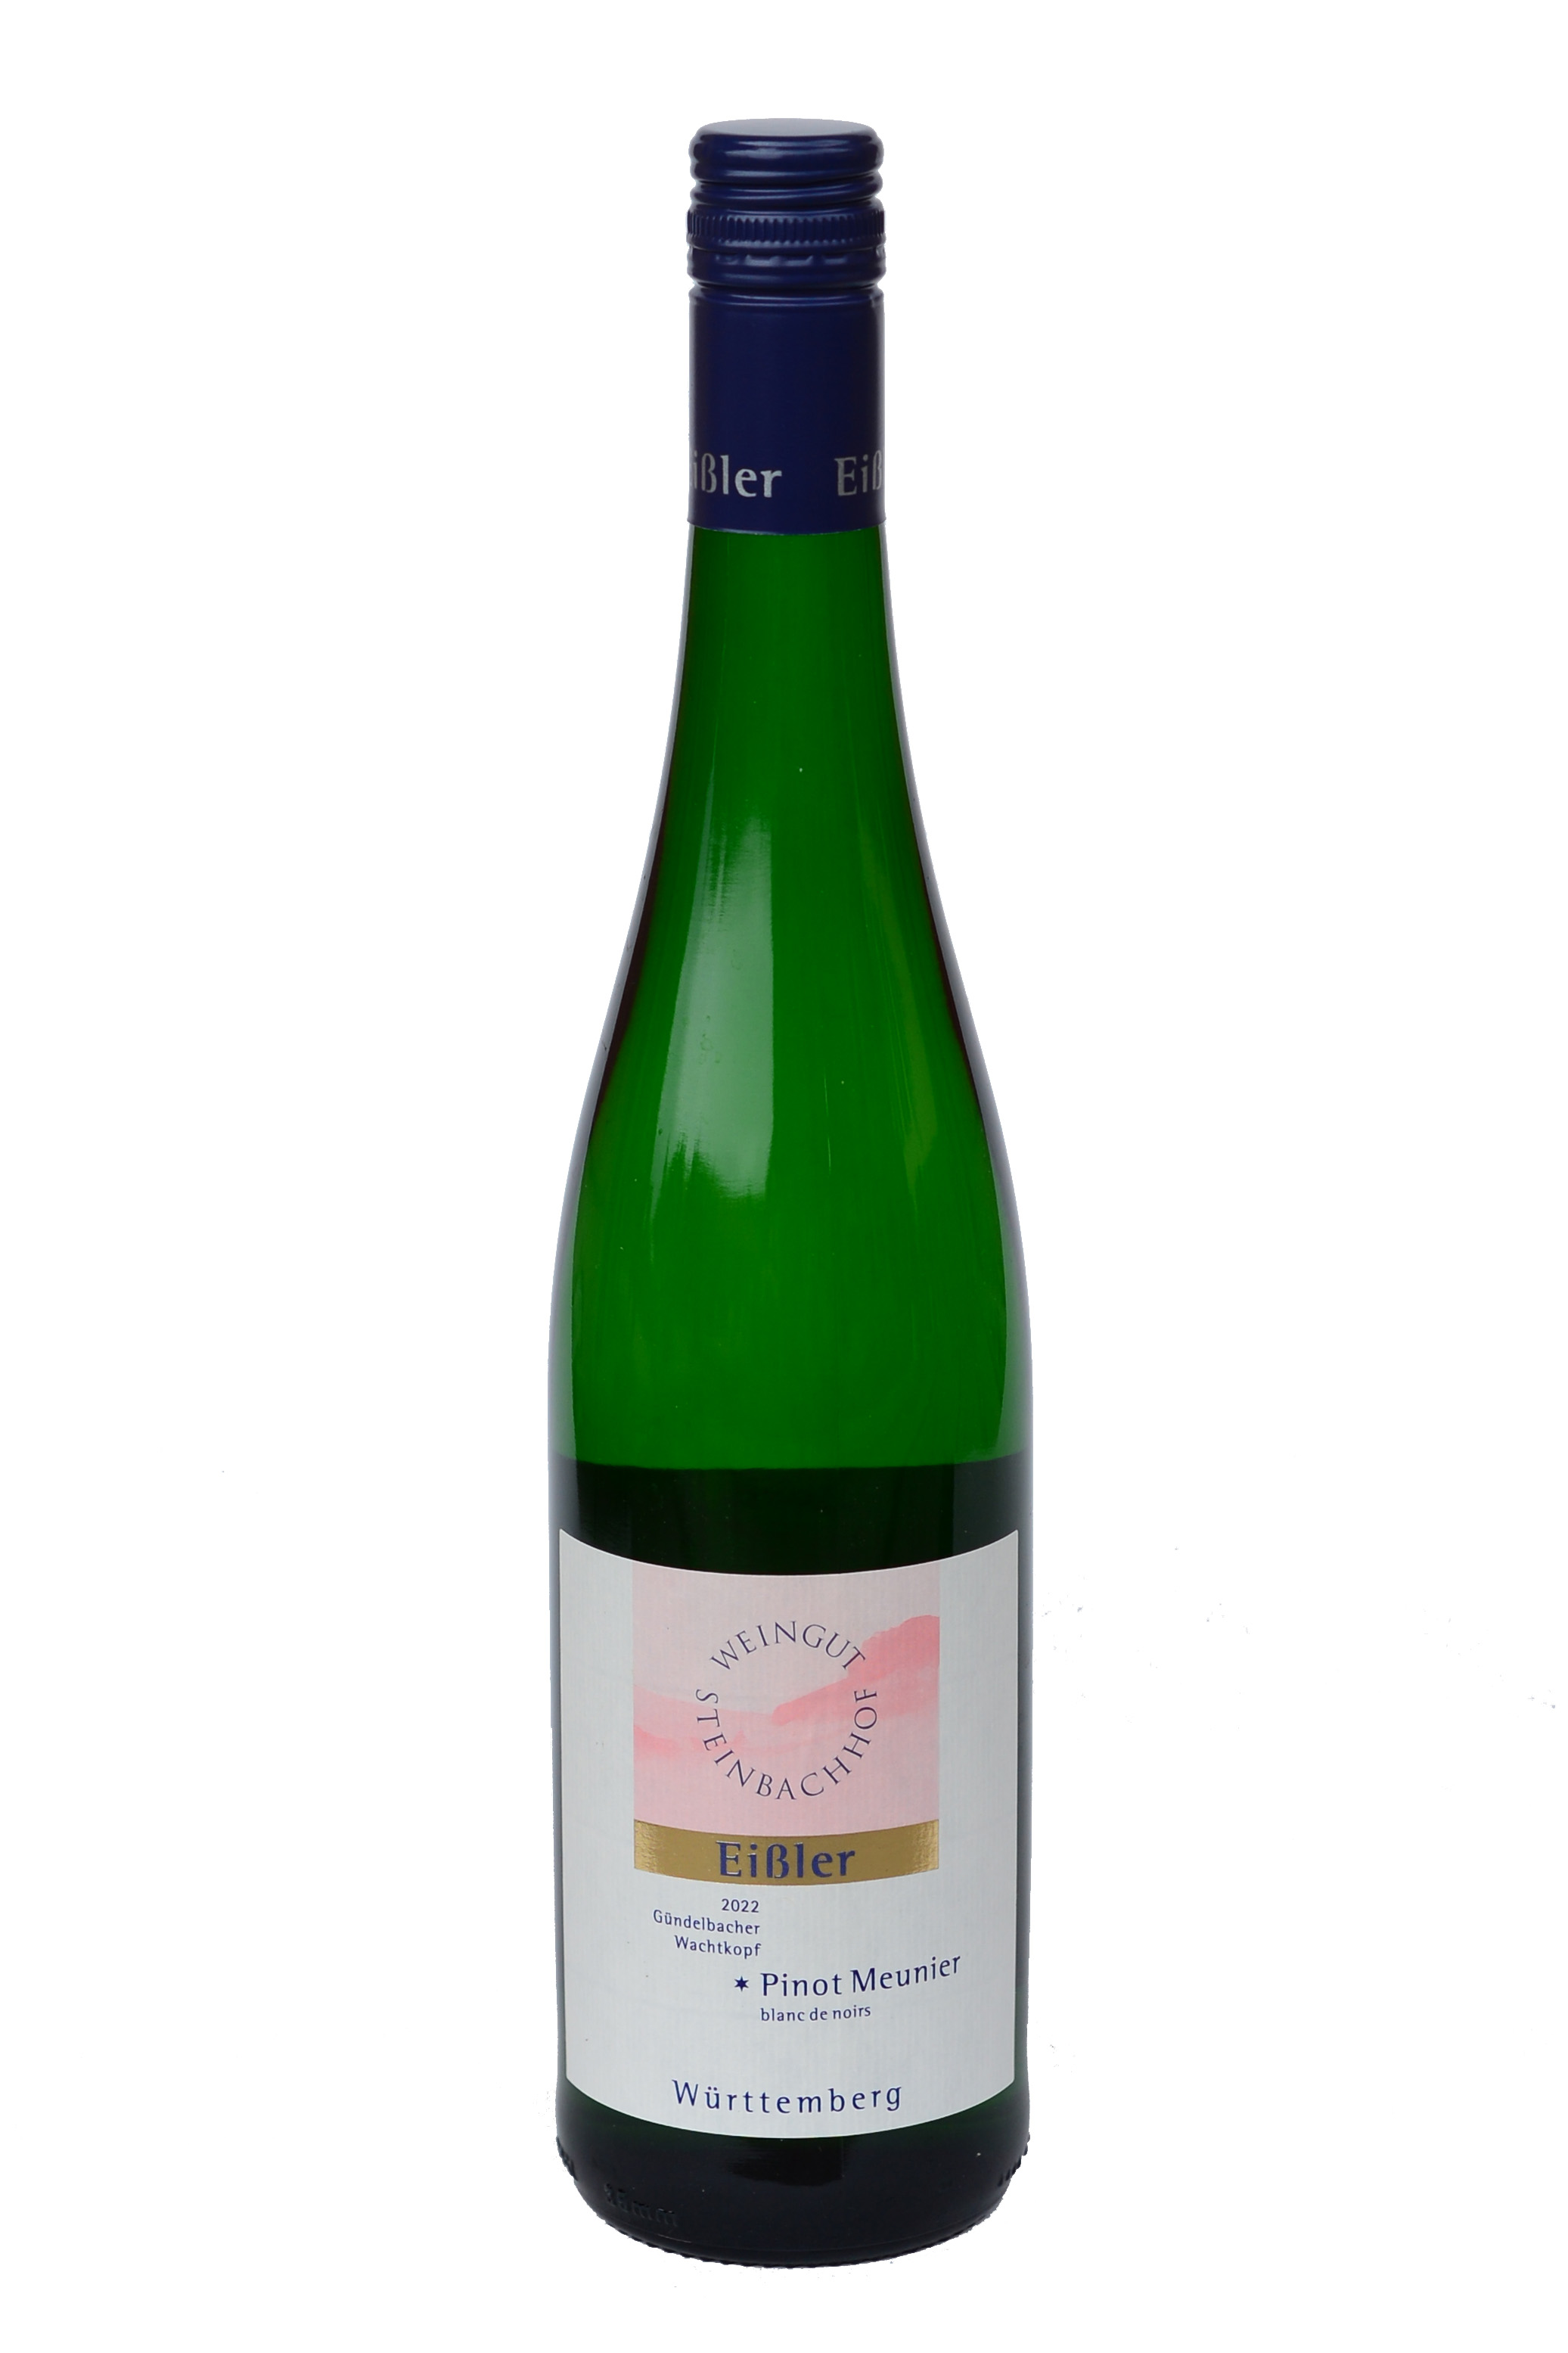 2022 Pinot Meunier blanc de noirs * Gündelbacher Wachtkopf 0,75 L - Eißler